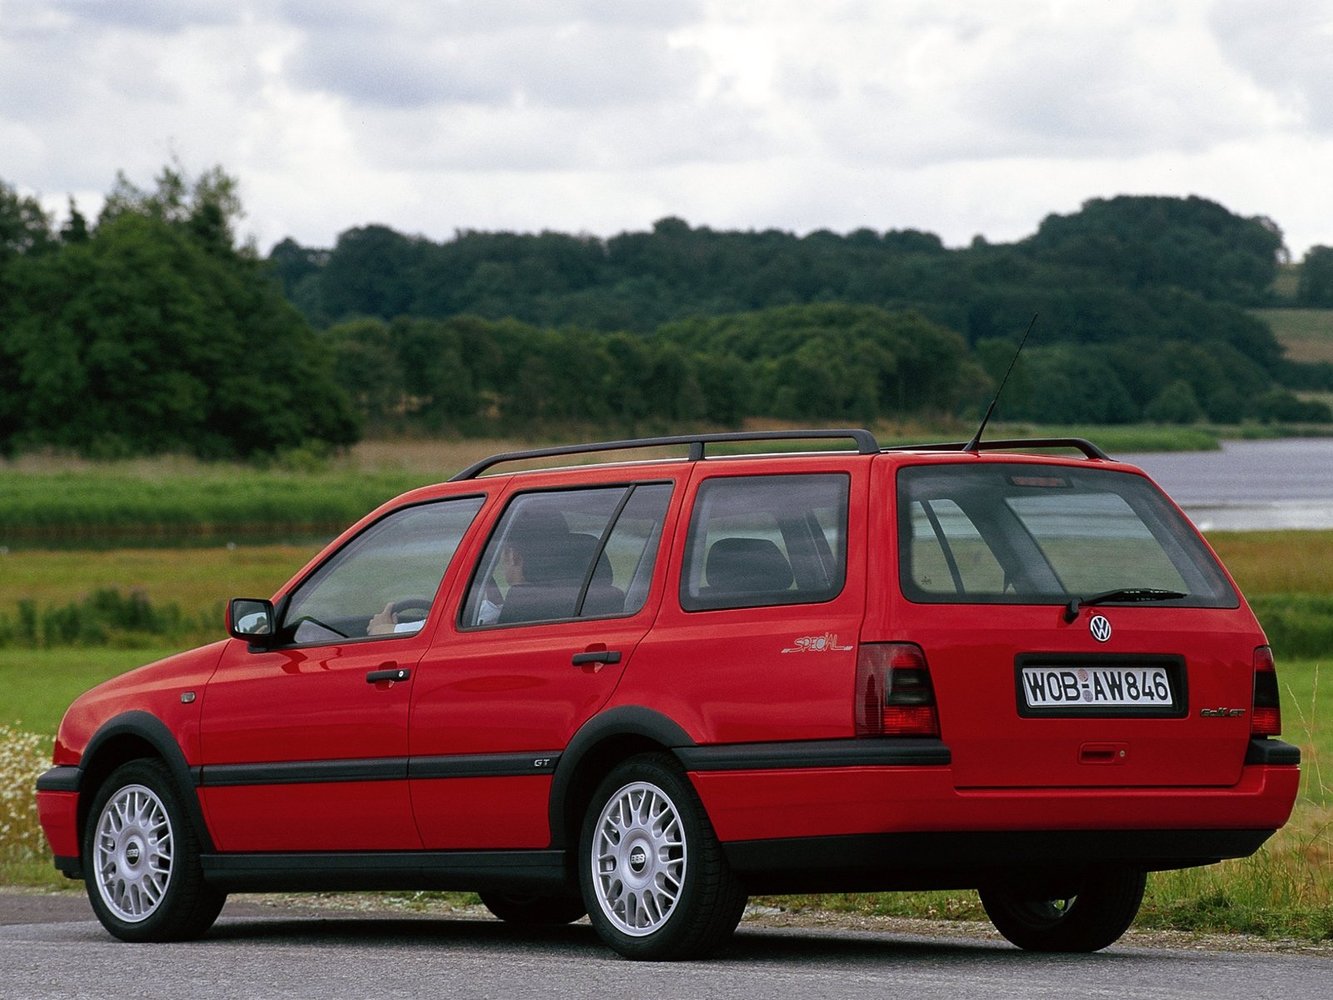 универсал Volkswagen Golf 1991 - 1997г выпуска модификация 1.4 MT (55 л.с.)